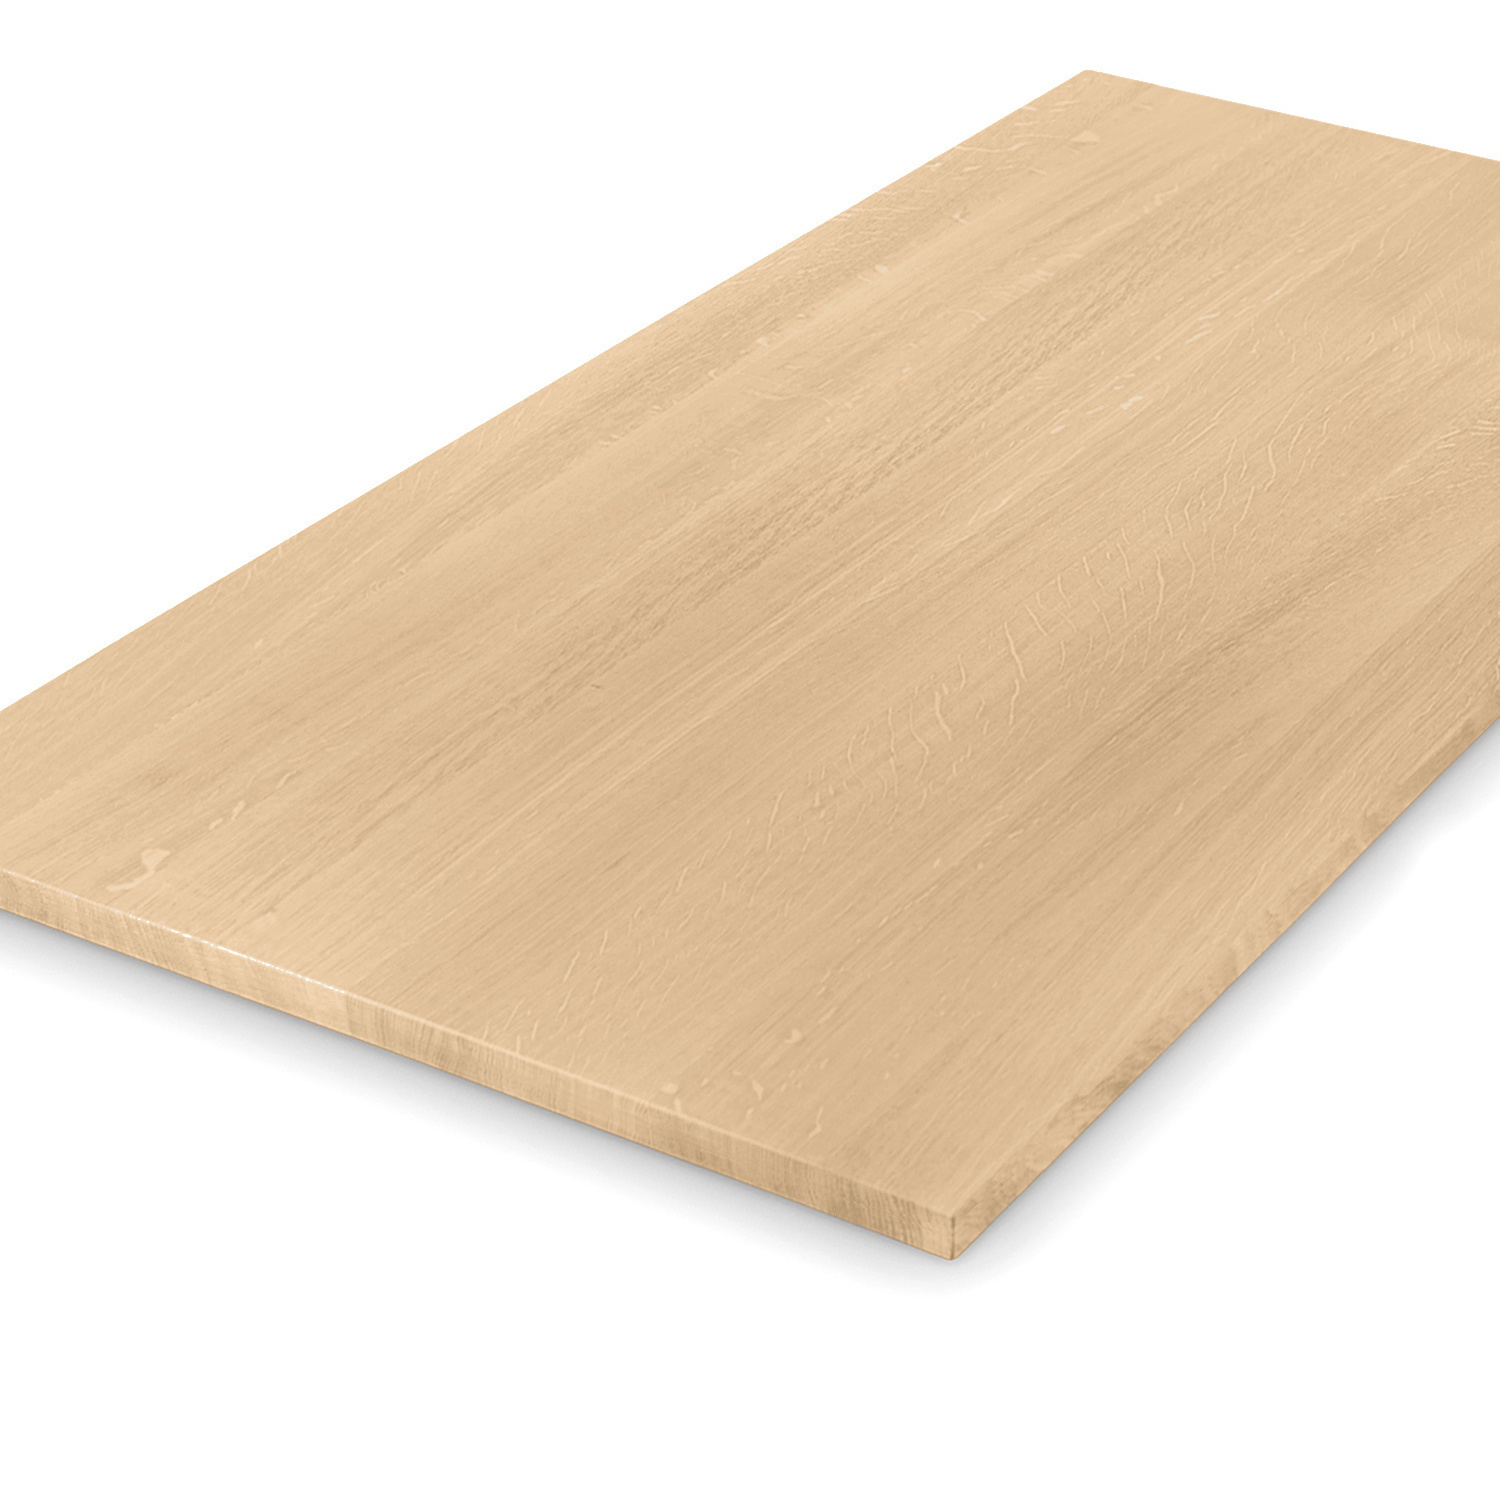  Tischplatte Eiche nach Maß - 2,3 cm dick - Eichenholz A-Qualität - Eiche Tischplatte massiv - verleimt & künstlich getrocknet (HF 8-12%) - 50-120x50-260 cm